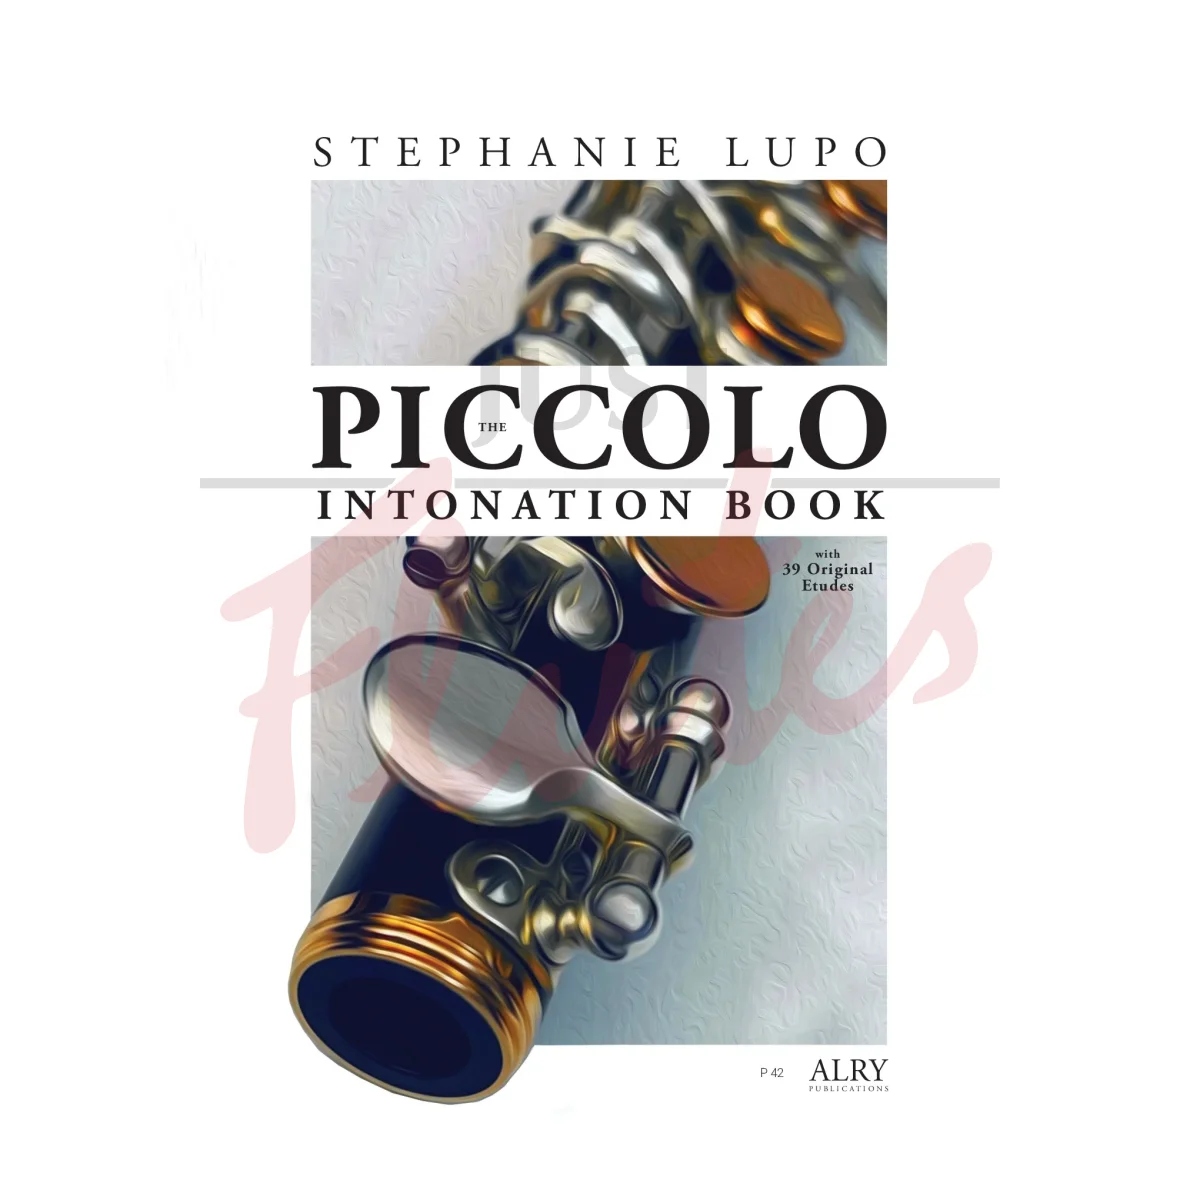 The Piccolo Intonation Book